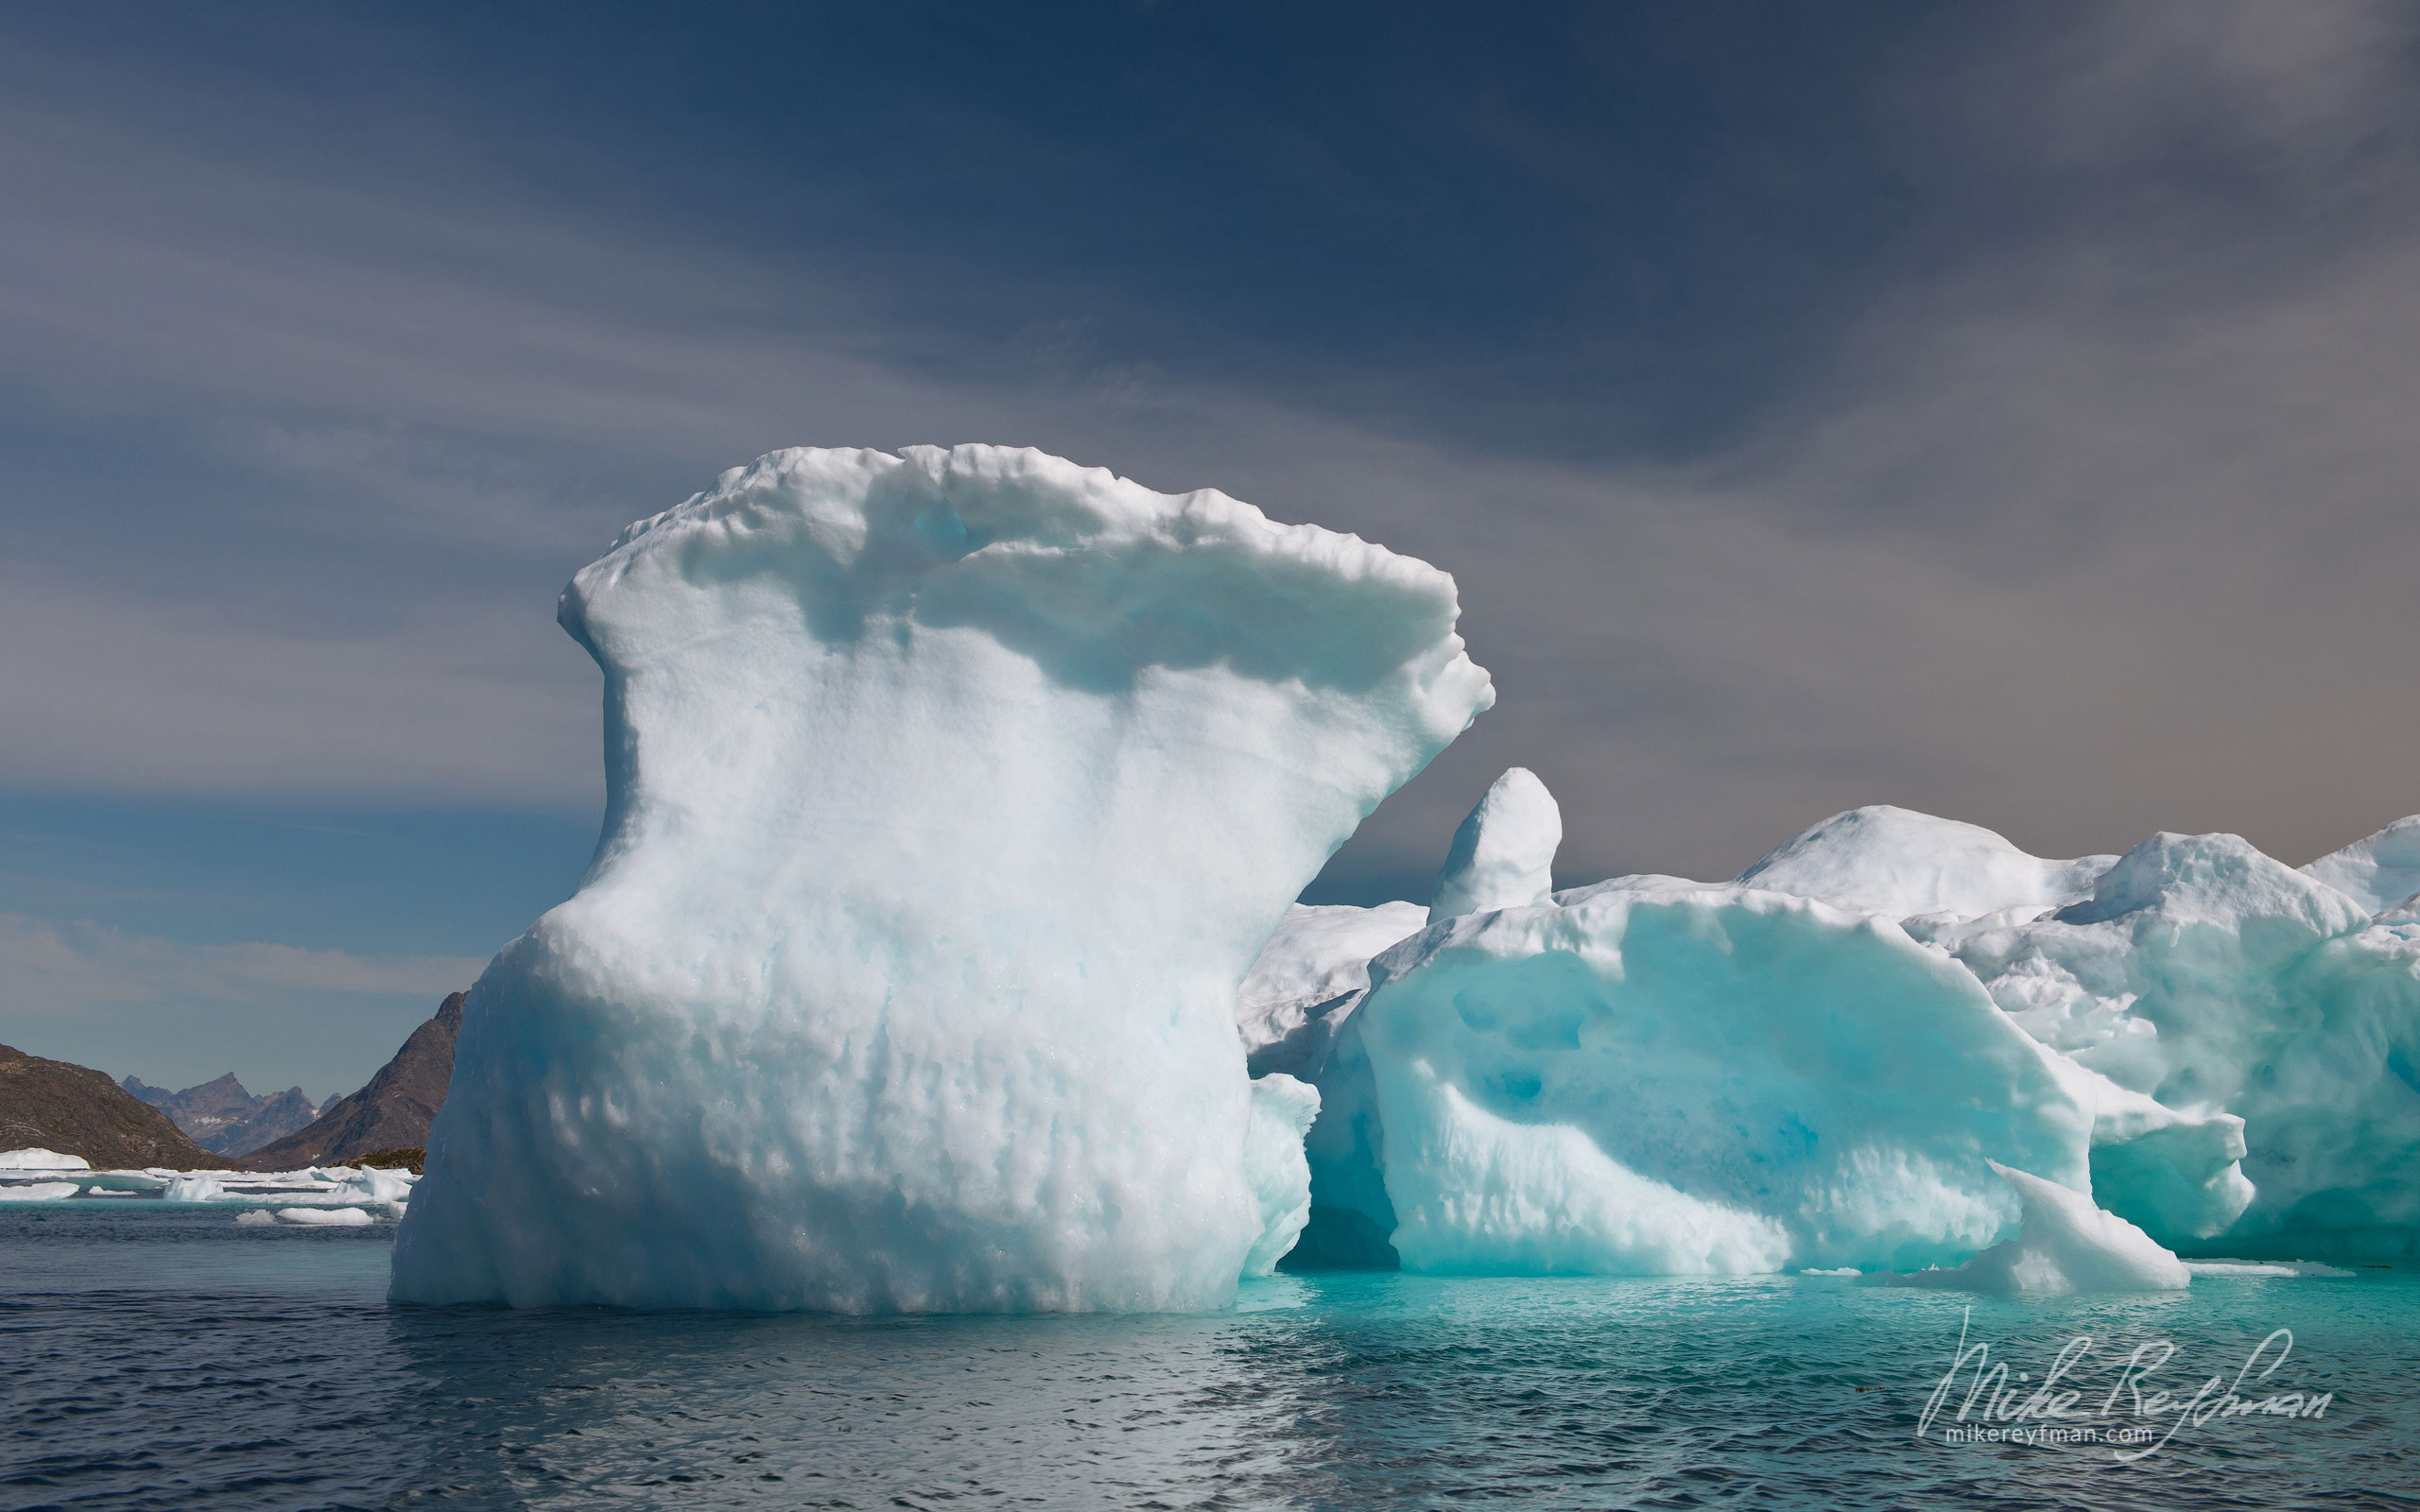 Frozen wave. Iceberg offshore Southeastern Greenland. 015-GR-KU_P3X5249 - Kulusuk island, Ammassalik Fjord & Torsuut Tunoq Sound. Southeastern Greenland - Mike Reyfman Photography